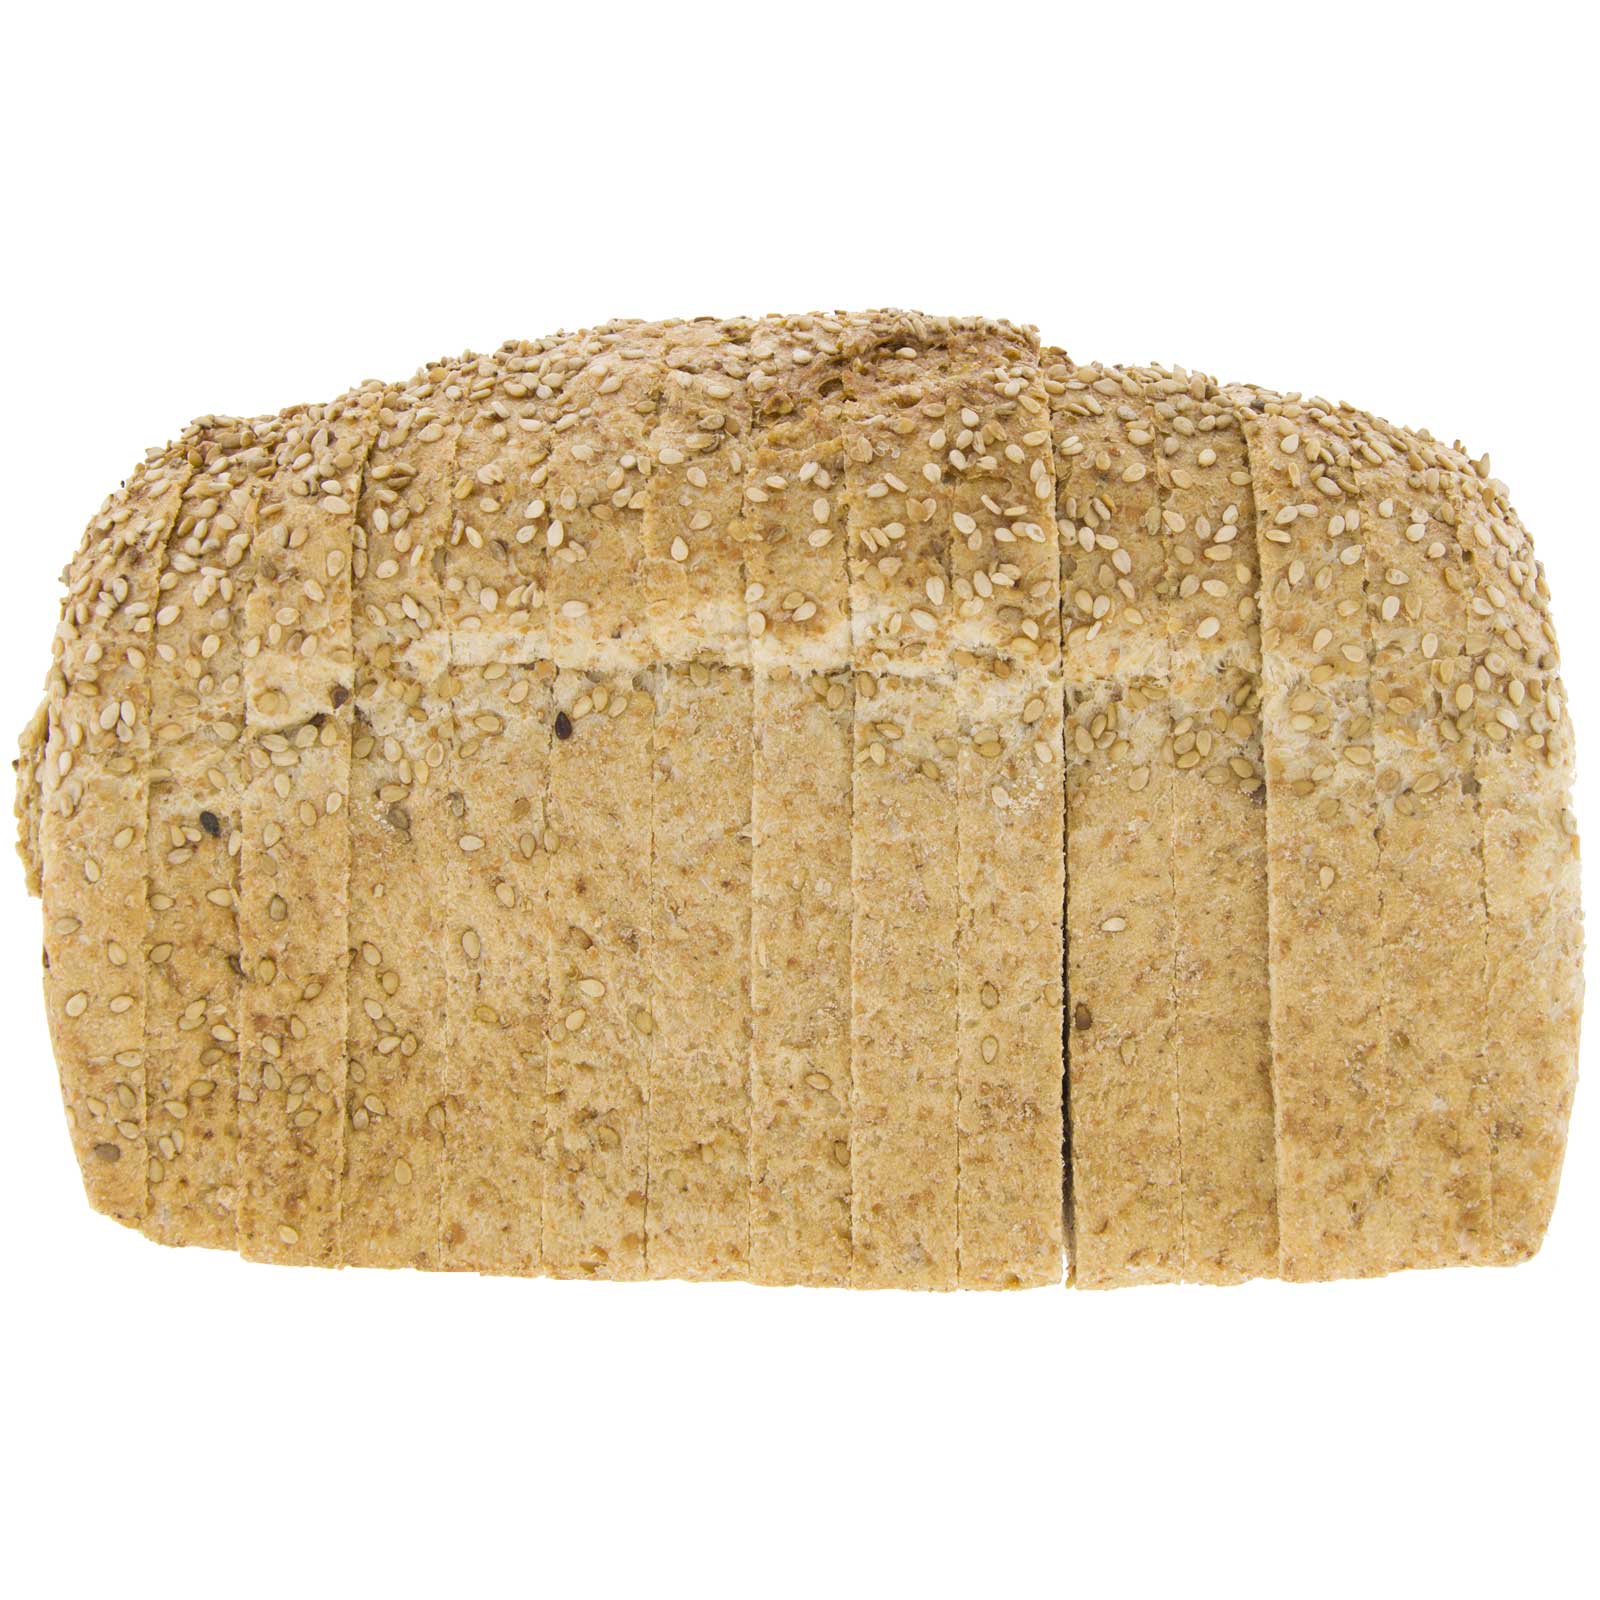 Pan de Molde de Trigo con Sésamo 450g Ecológico Gourmet